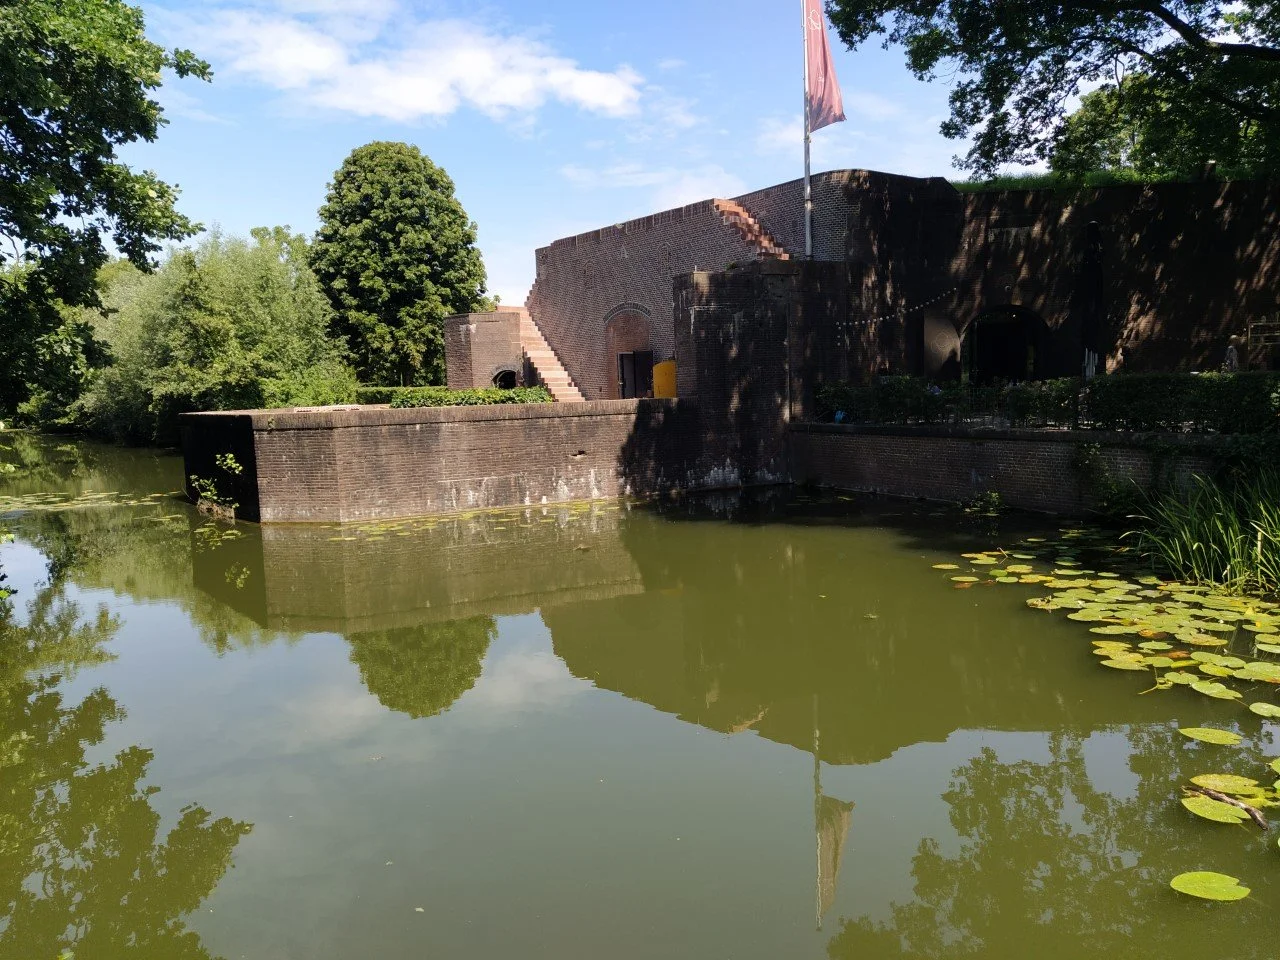  Nieuwegein: Mijn favoriete plek in Nieuwegein is Fort Jutphaas vooral in de zomer.